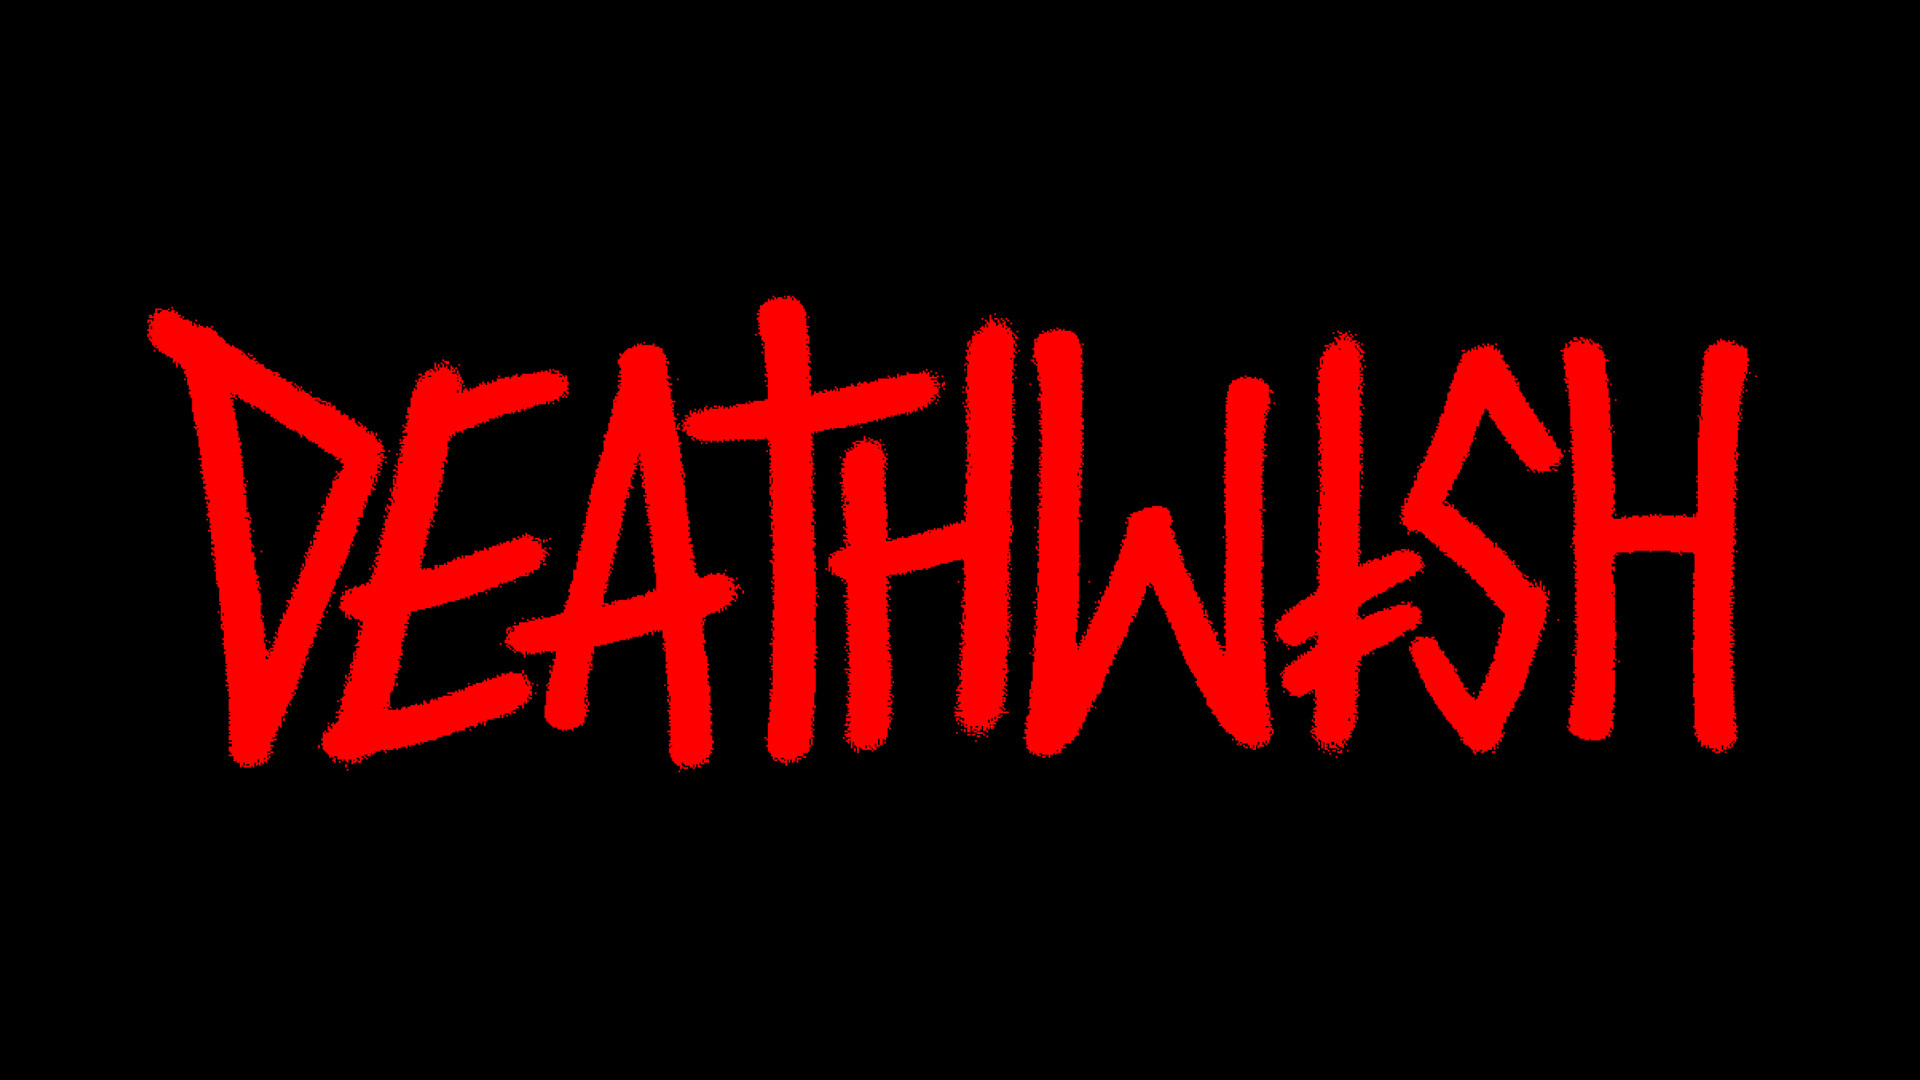 Death Wish Skateboards wallpaper – 673425